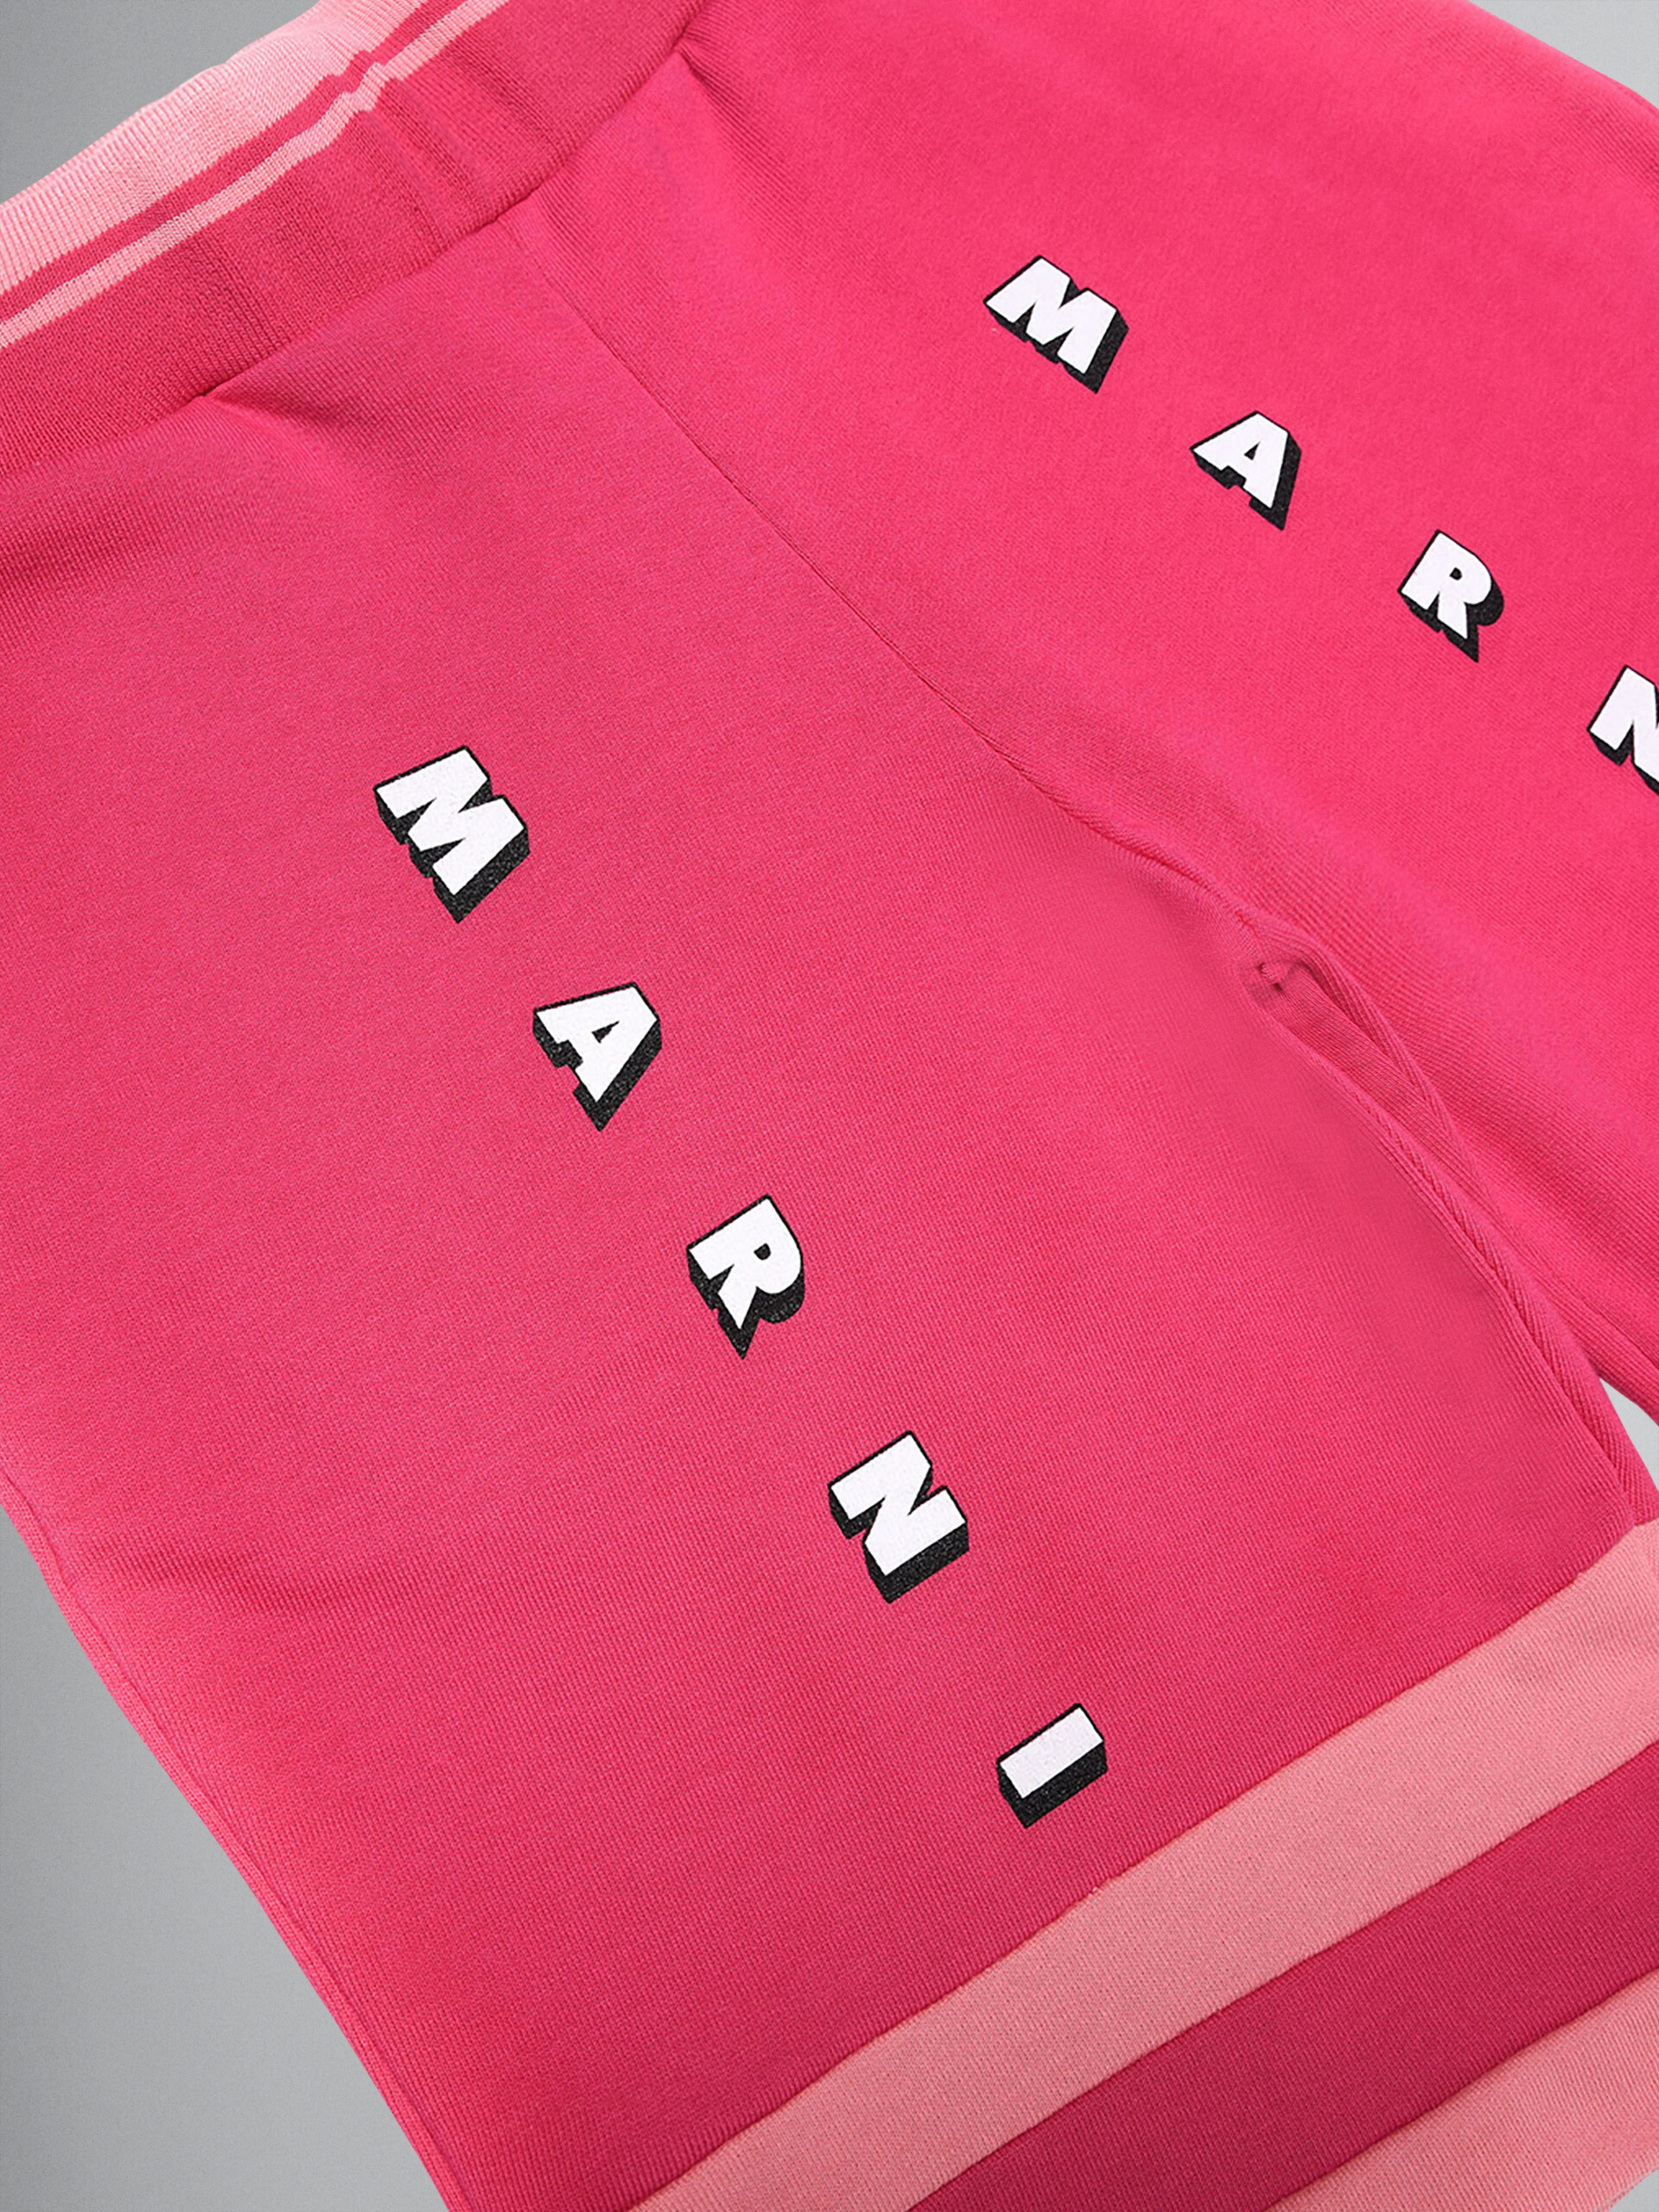 Pantalón de jogging corto sudadera de algodón rosa color block - Pantalones - Image 3